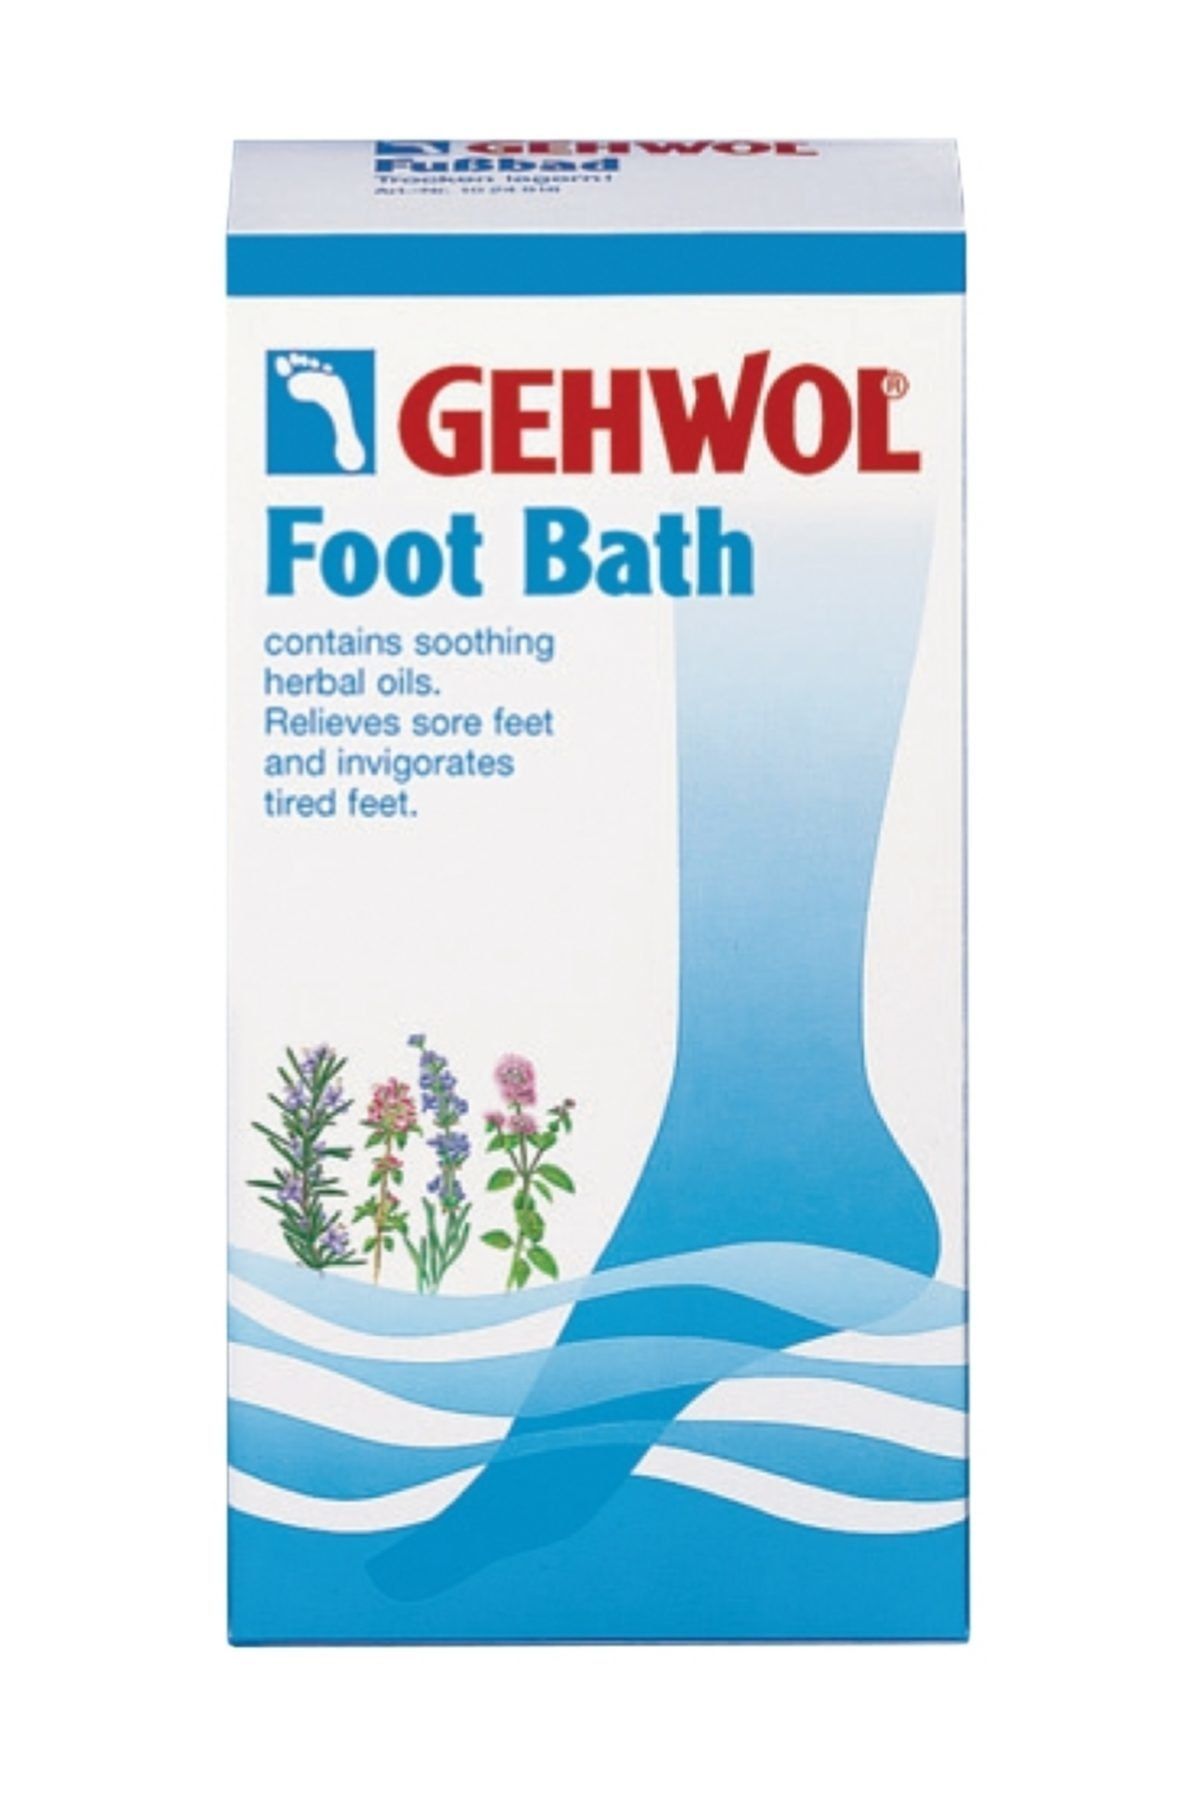 Gehwol Foot Bath - Ayak Banyosu 400gr